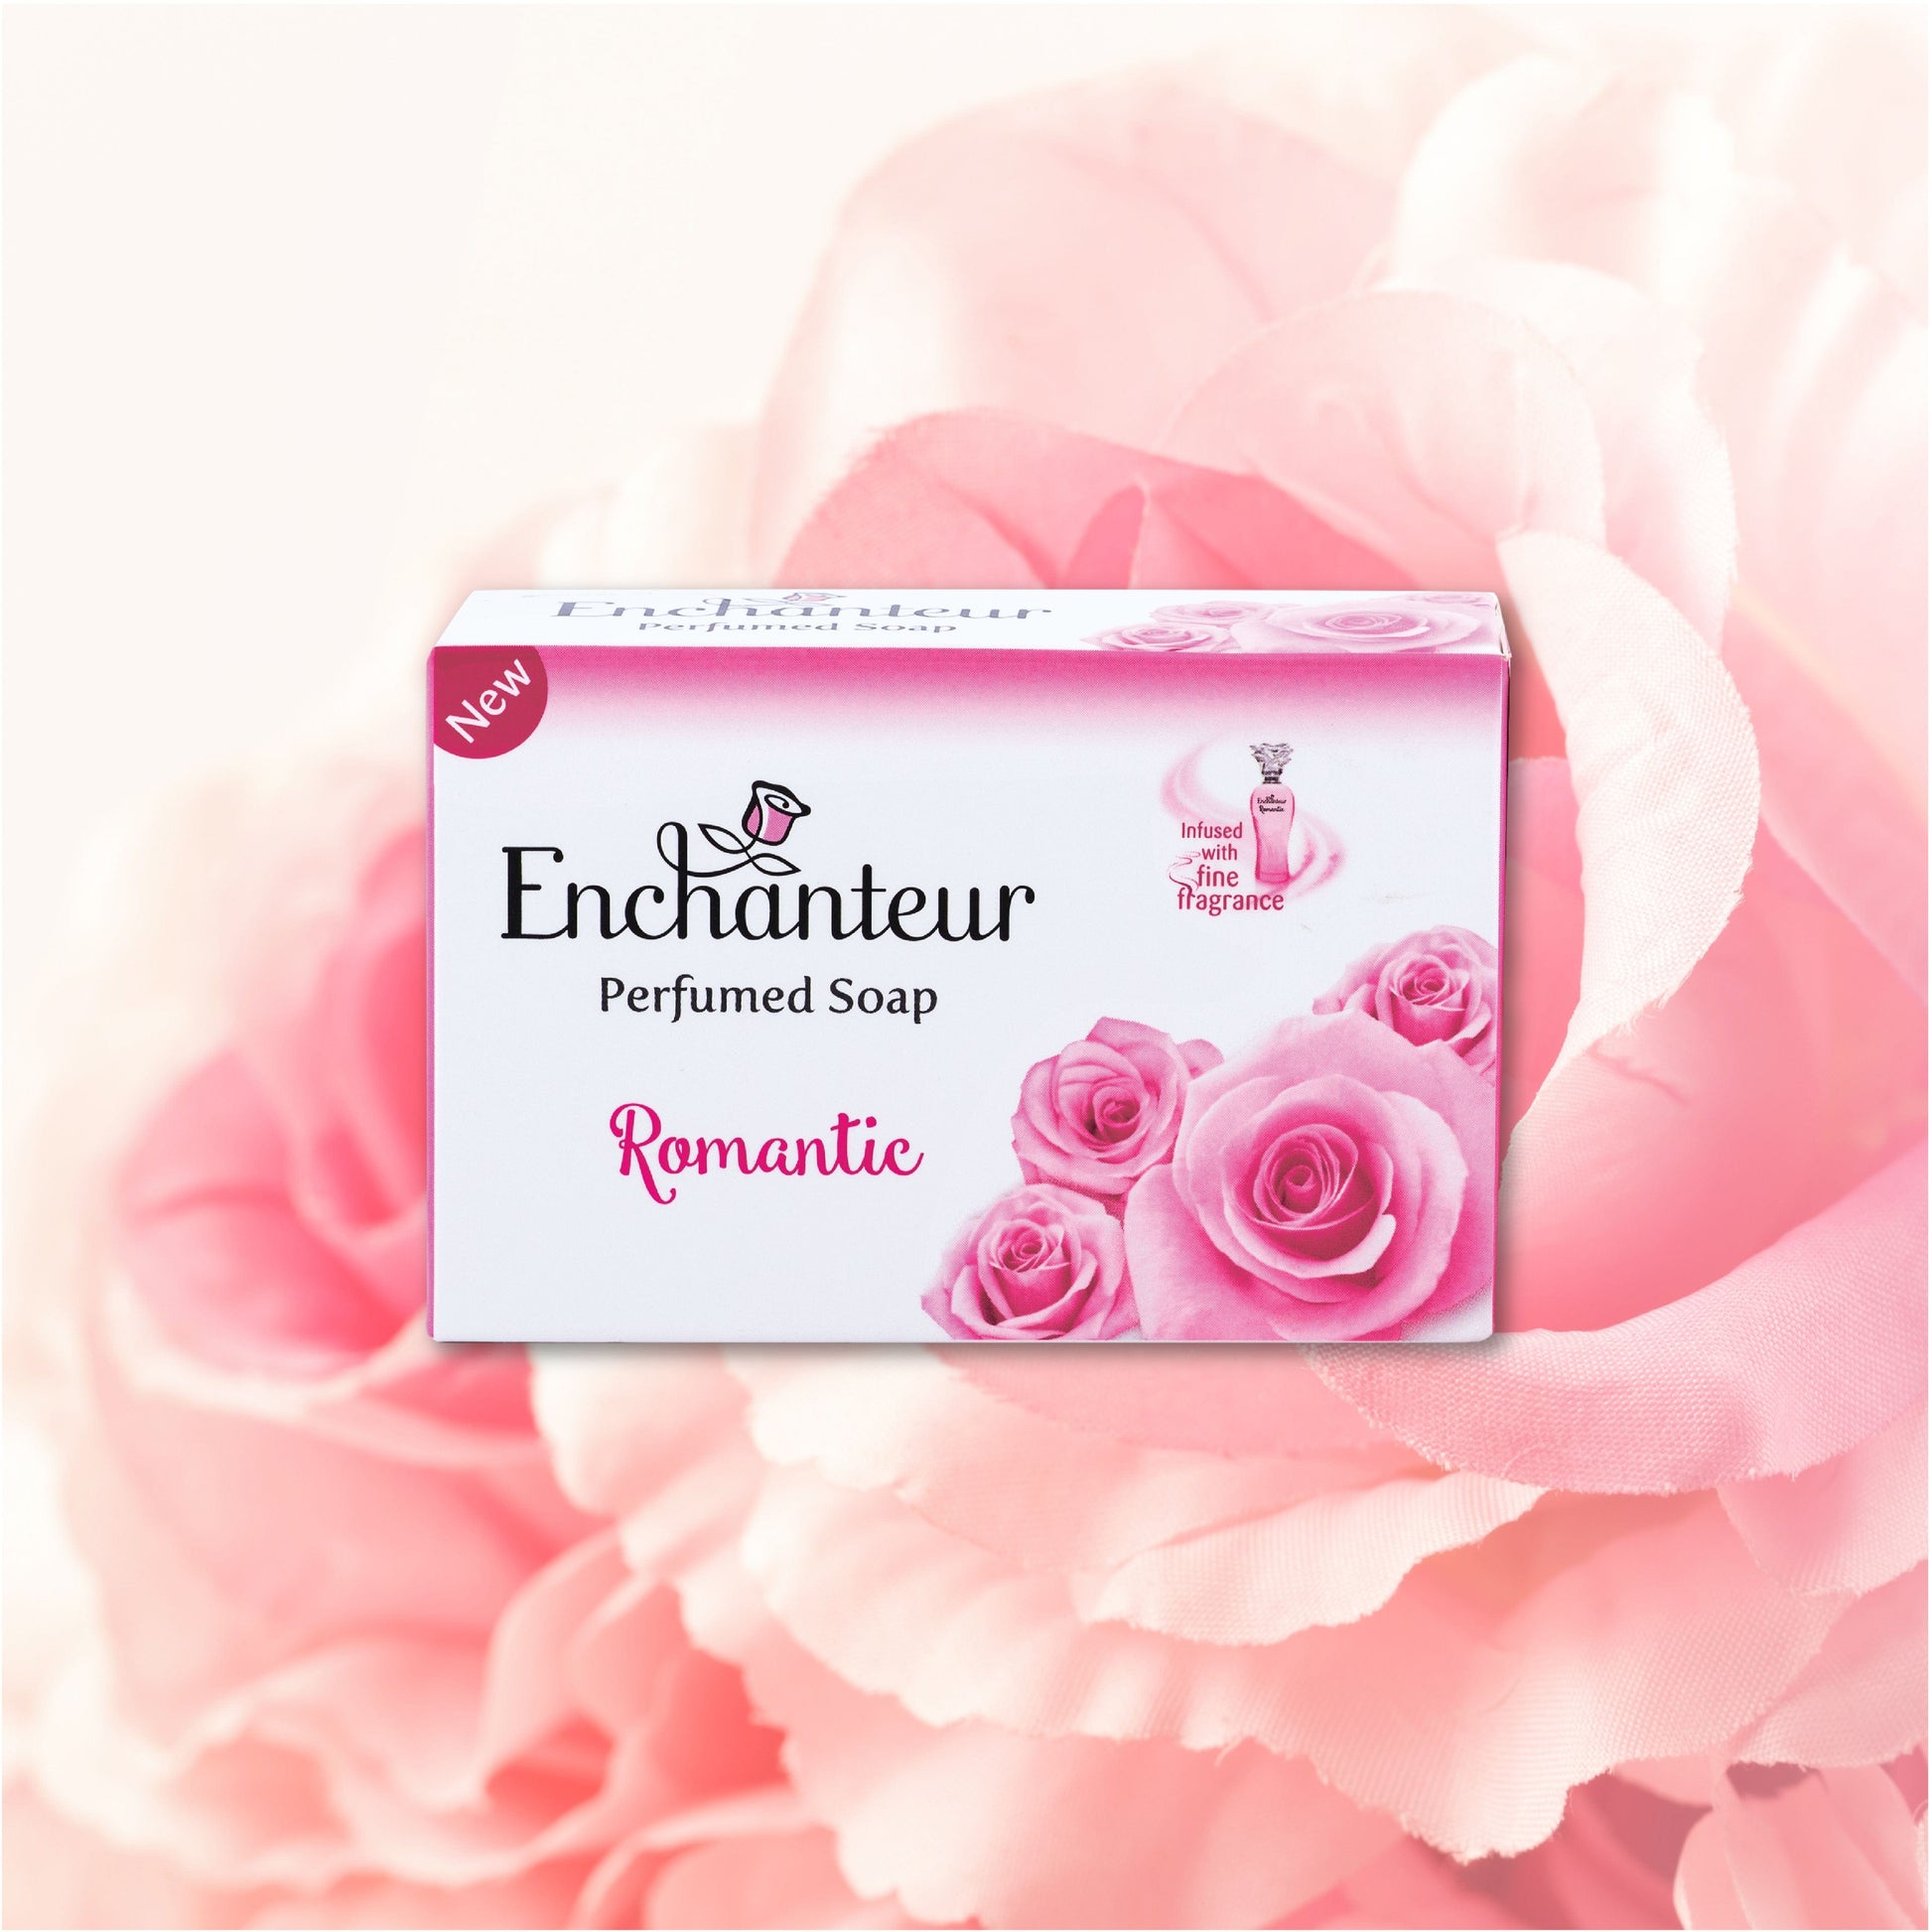 Enchanteur Romantic Perfumed Bathing Bar, Pack of 3+1